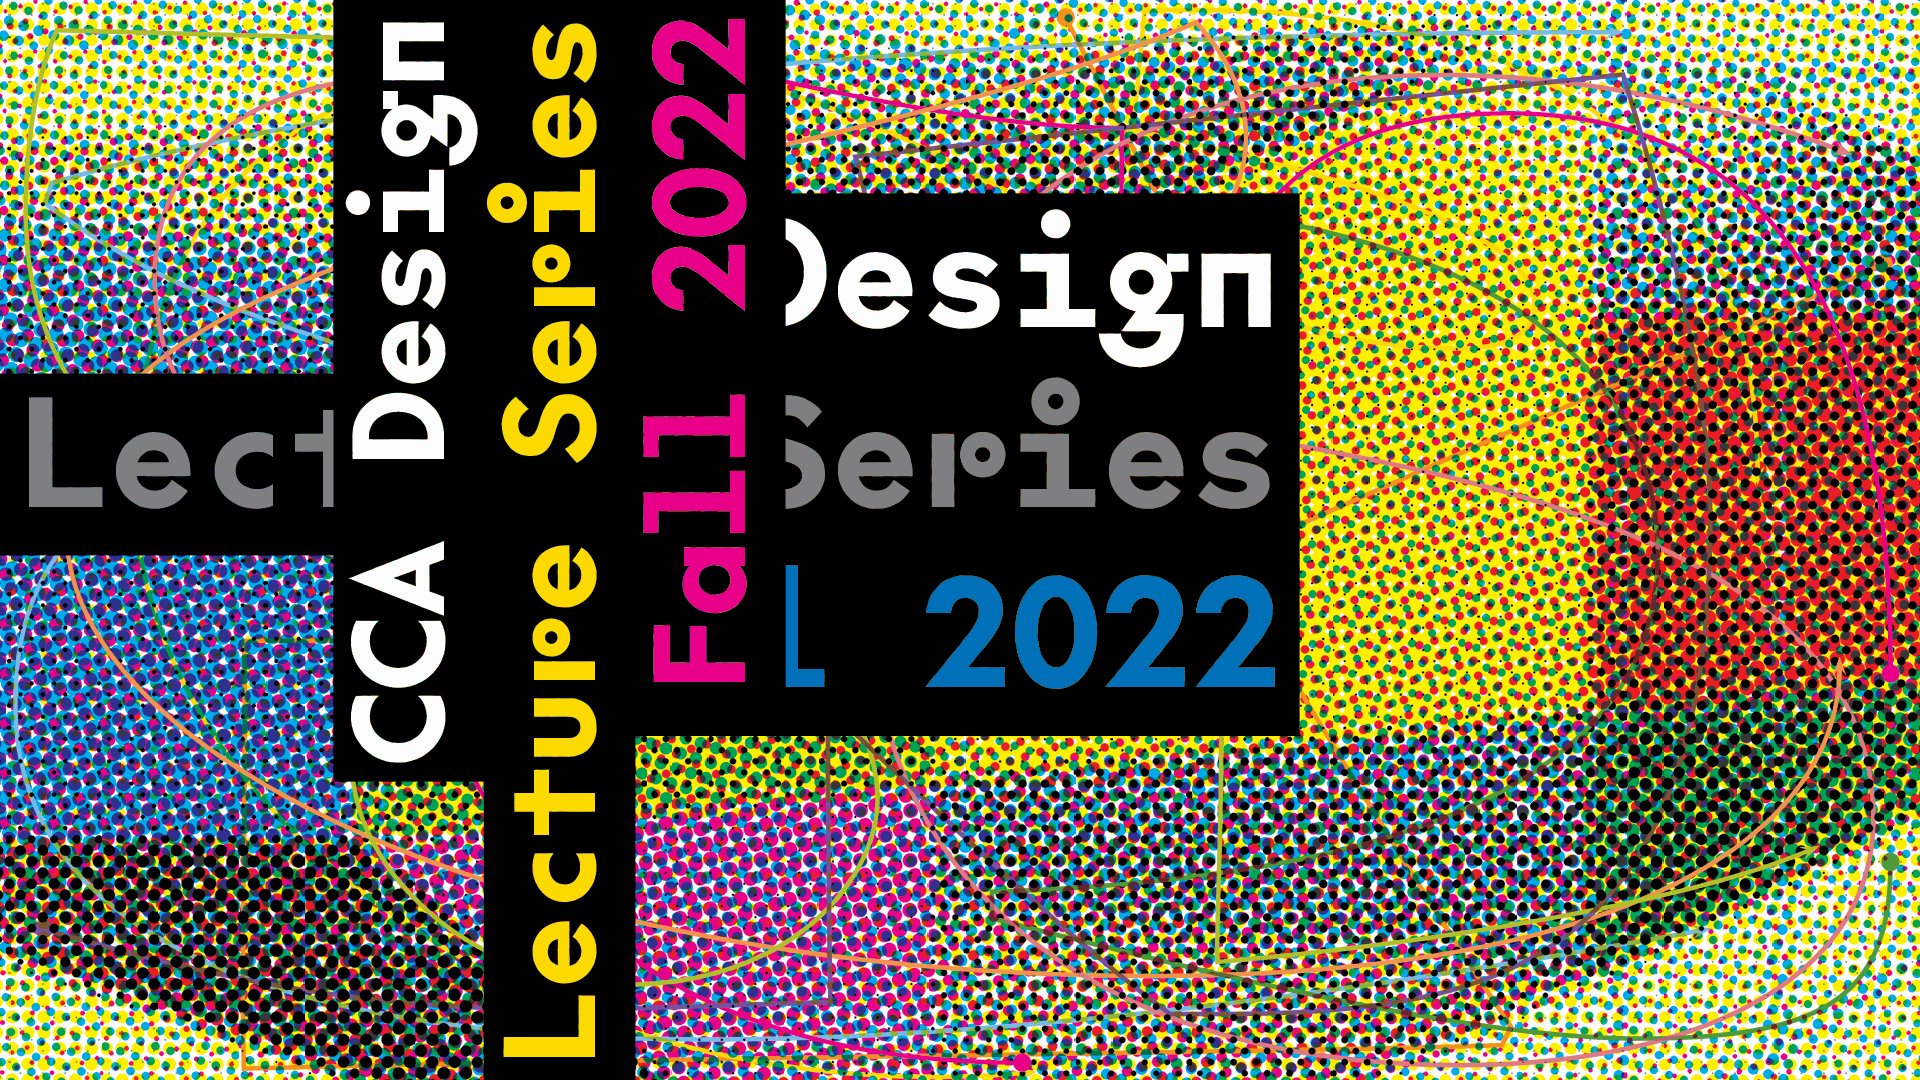 Design_Lecture_series_HM_meeting_slides_v4_2.jpg